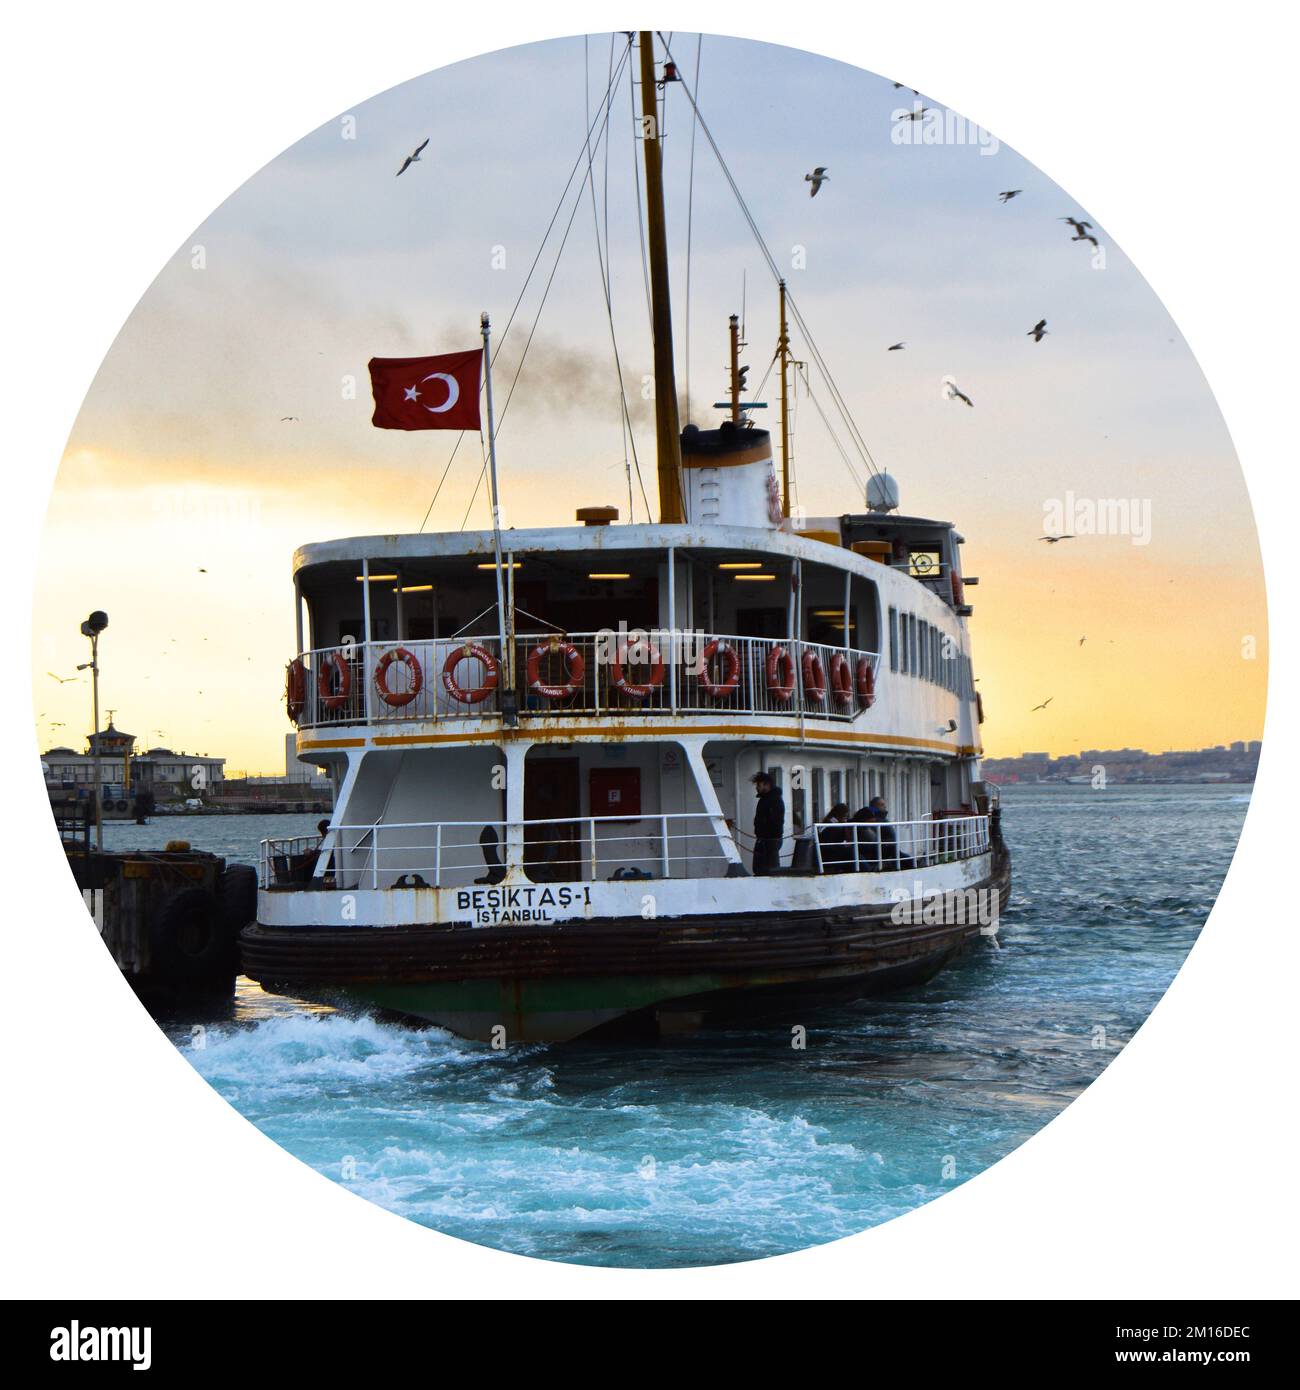 Weißes Kreuzfahrtschiff mit Fähre, Beförderung von Passagieren, Symbol von istanbul, März 23 2019 Kadikoy Istanbul Türkei Stockfoto